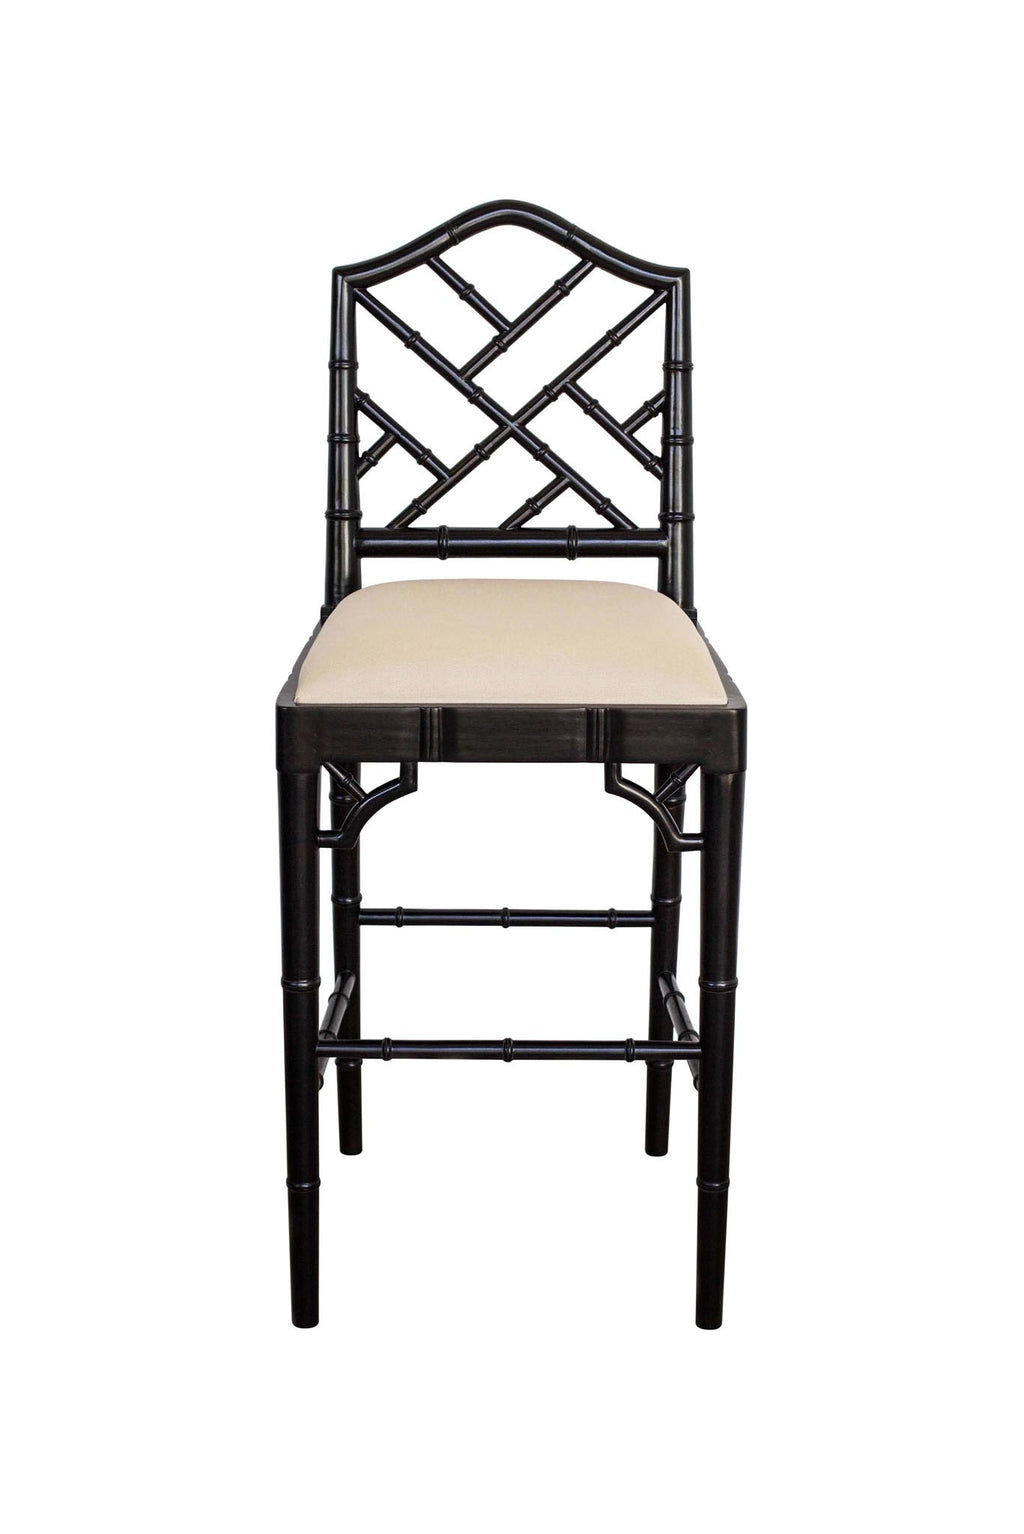 Classic Caribbean stool - black